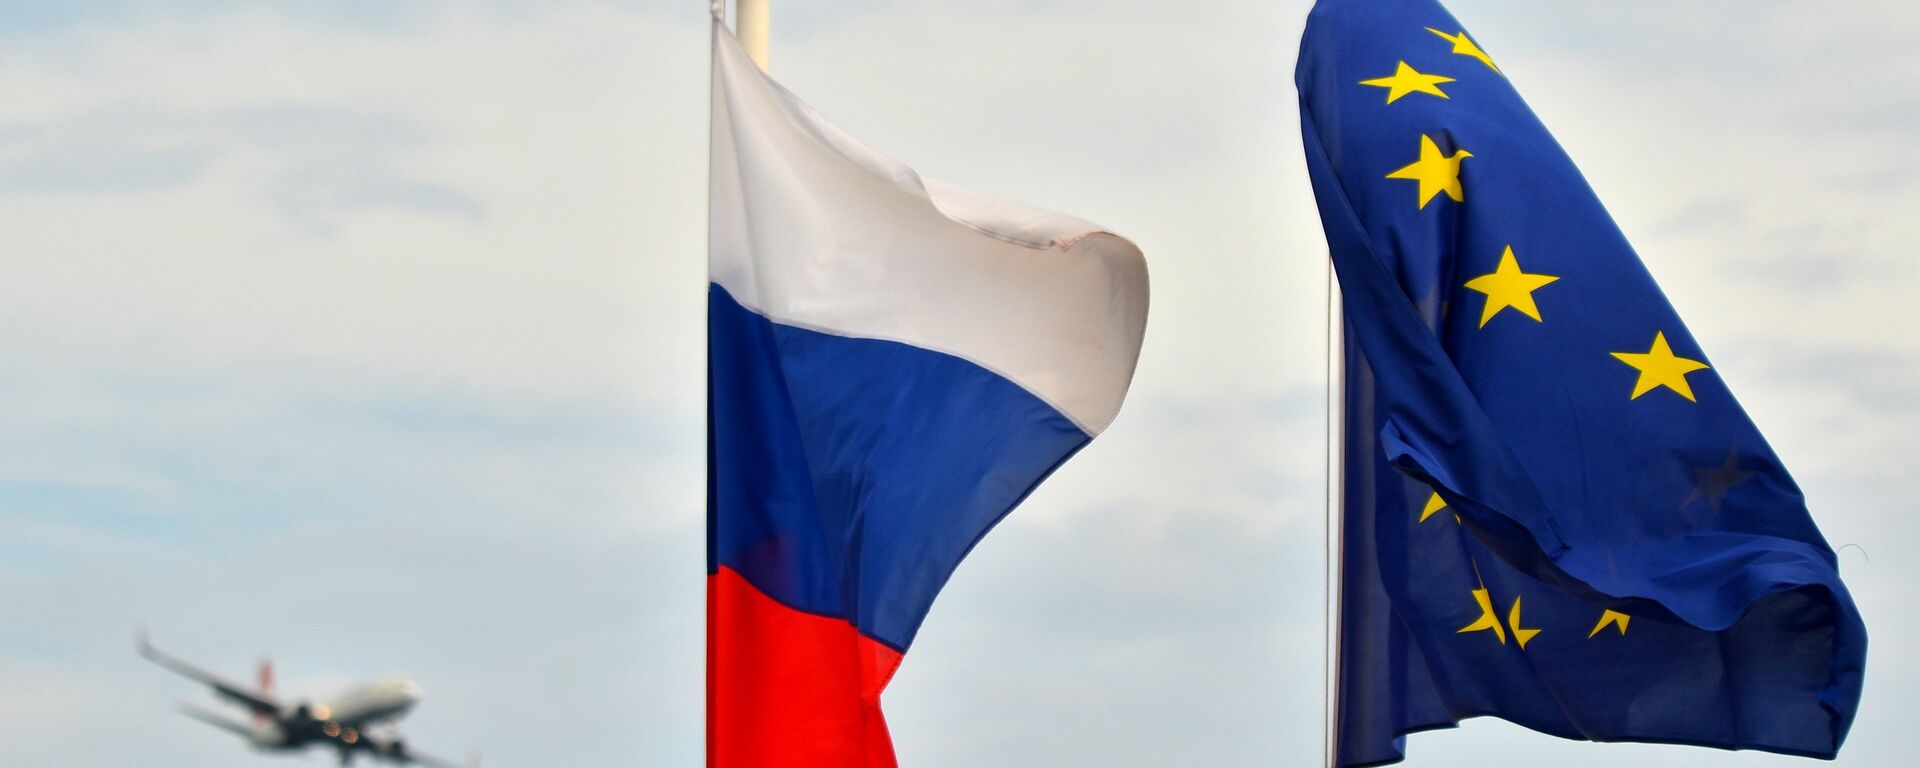 Флаги России, ЕС, Франции и герб Ниццы на набережной Ниццы - Sputnik Латвия, 1920, 27.01.2021